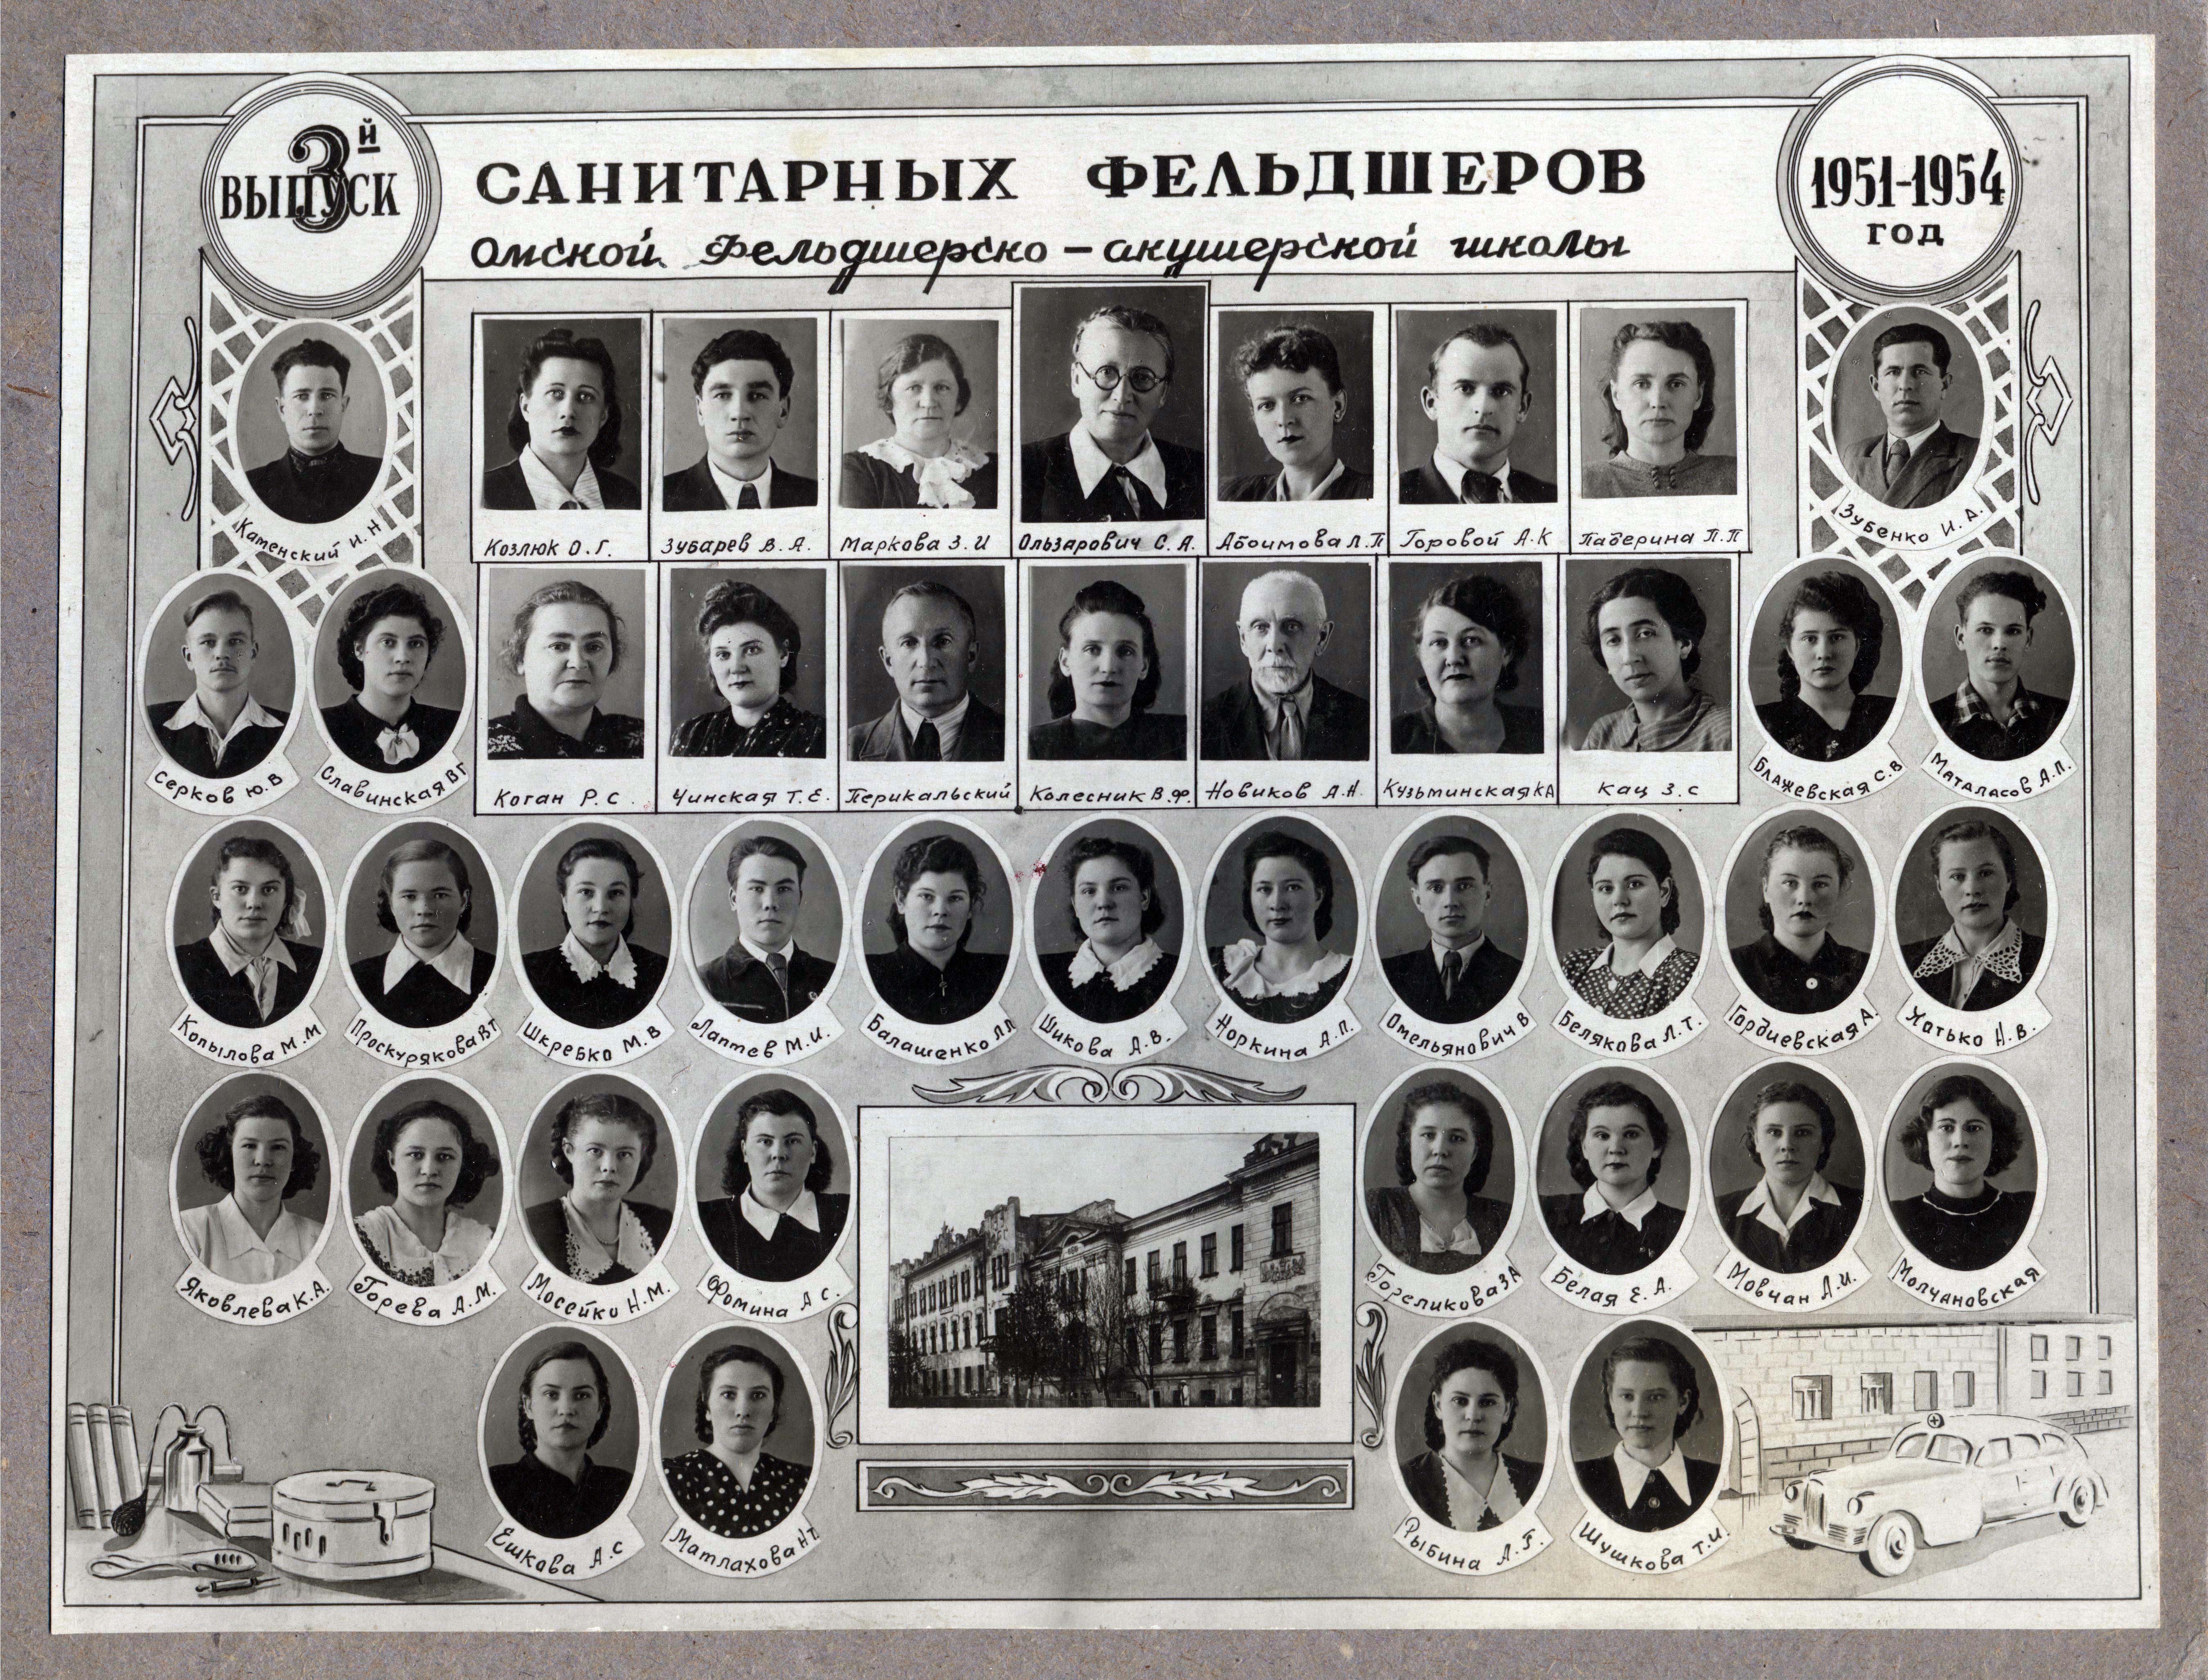 3-й выпуск санитарных фельдшеров Омской фельдшерско-акушерской школы 1951-1954 г.